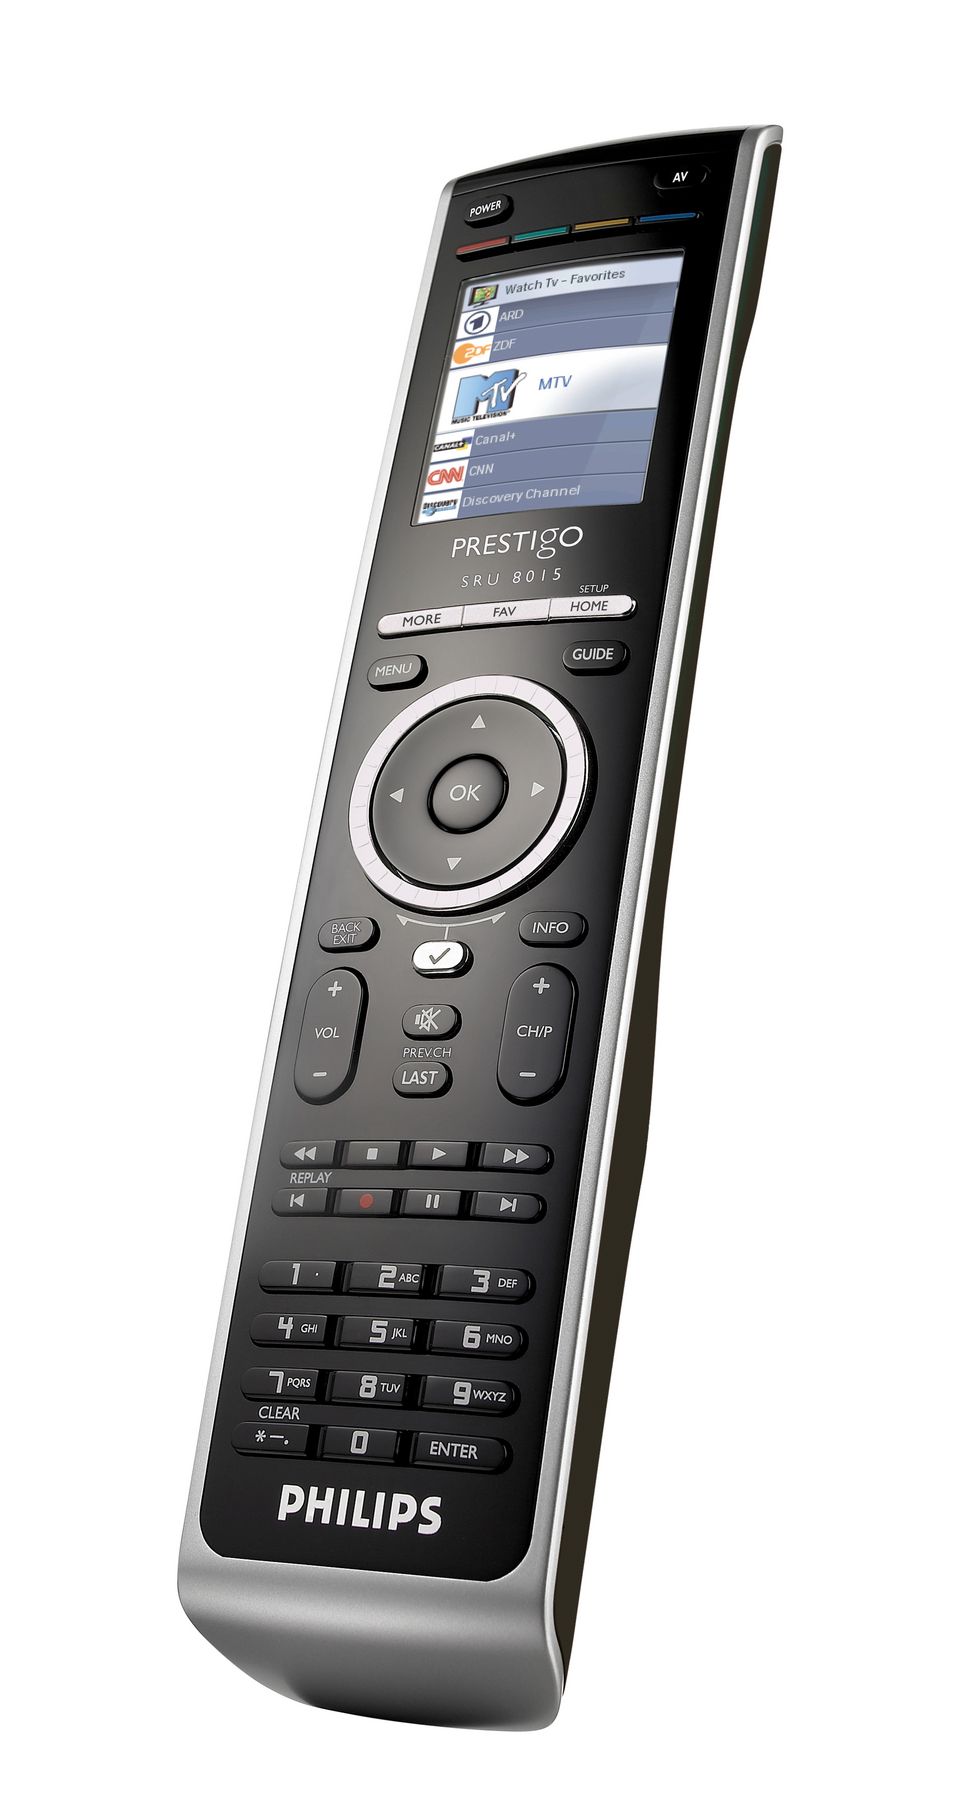 Telecomando Philips sru 8015 Modello 3D $44 - .3ds .c4d .lwo .max .ma .obj  .xsi - Free3D